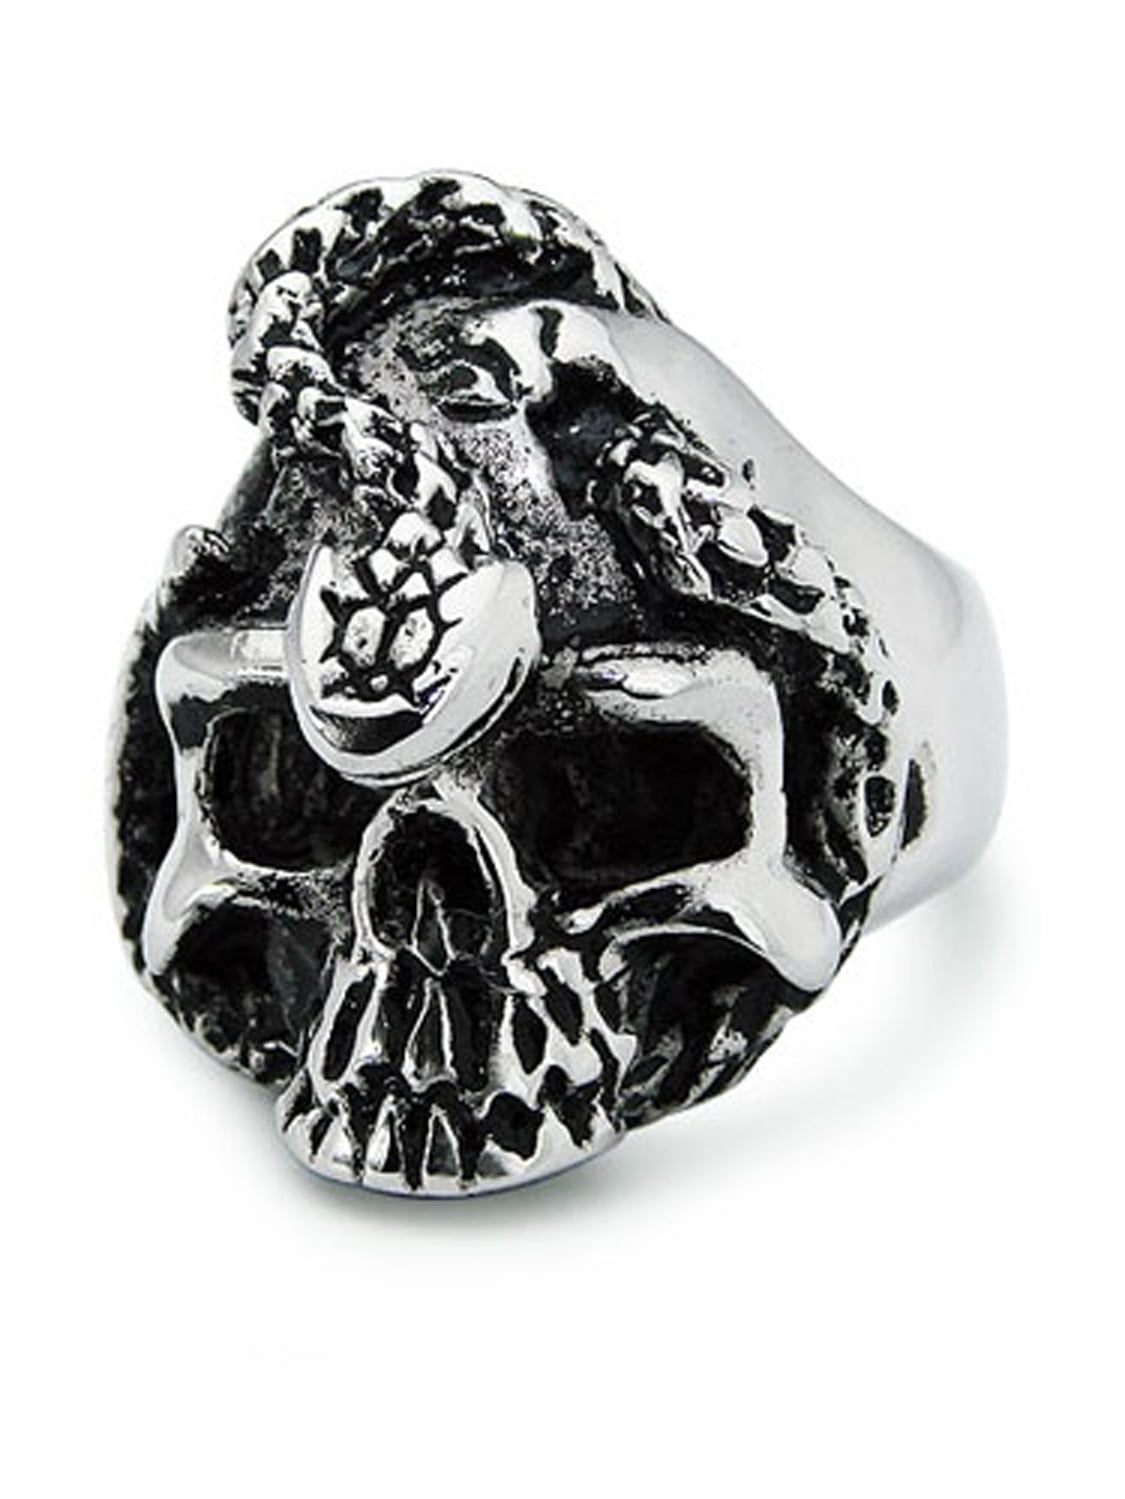 Stainless Steel Skull Snake Biker Style Ring